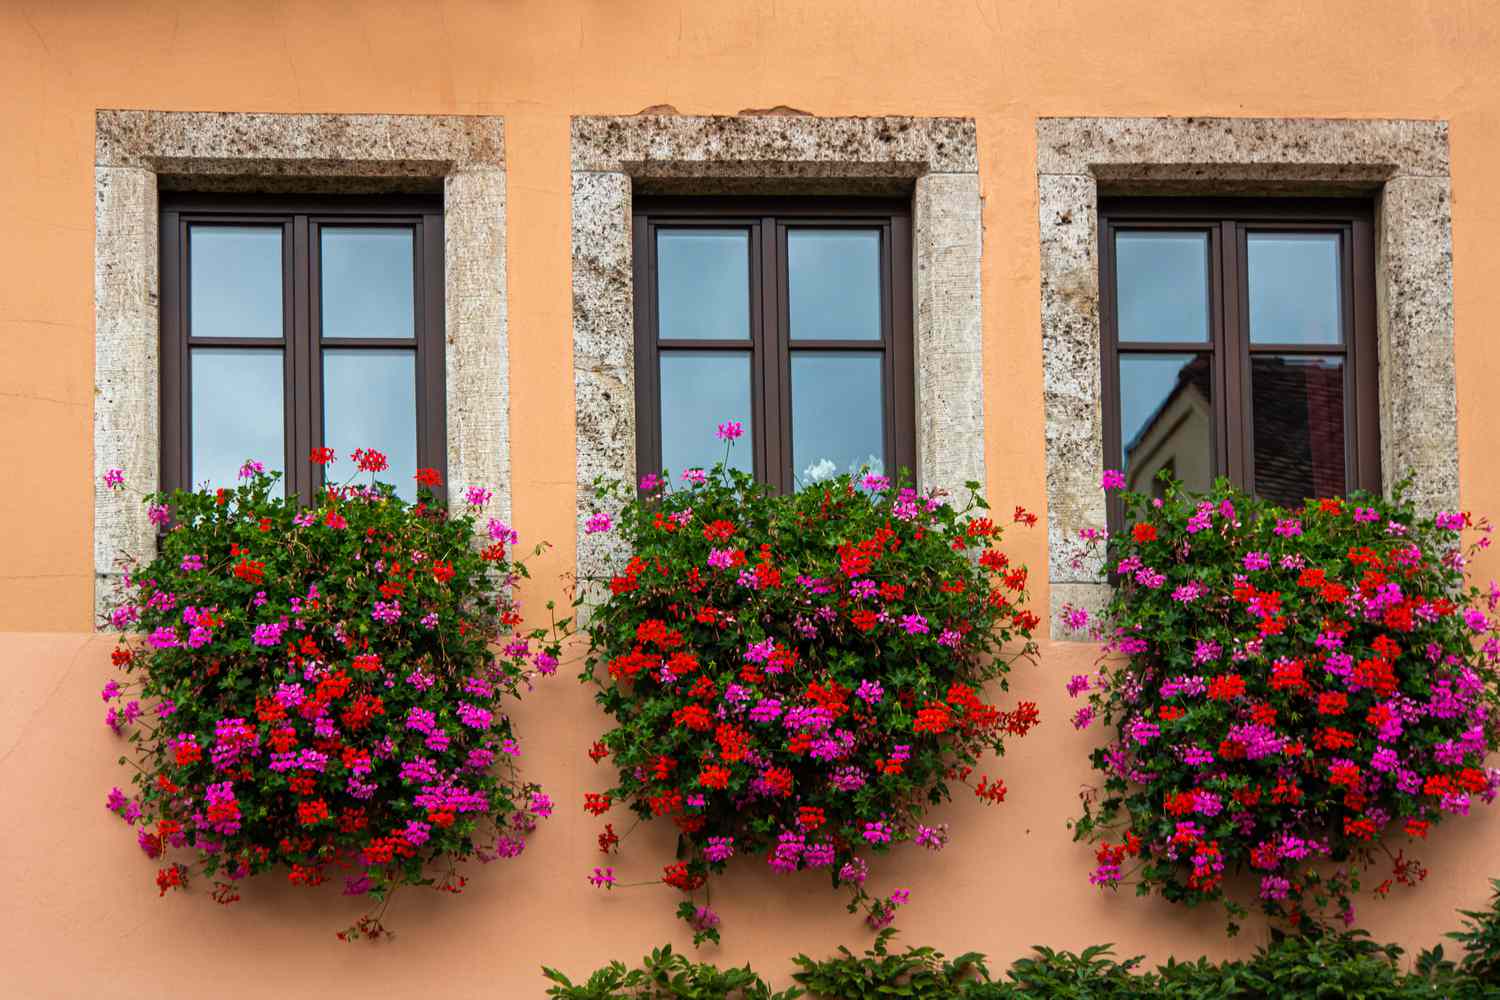 Plantas de gerânio hera penduradas nos peitoris das janelas com flores rosas e vermelhas